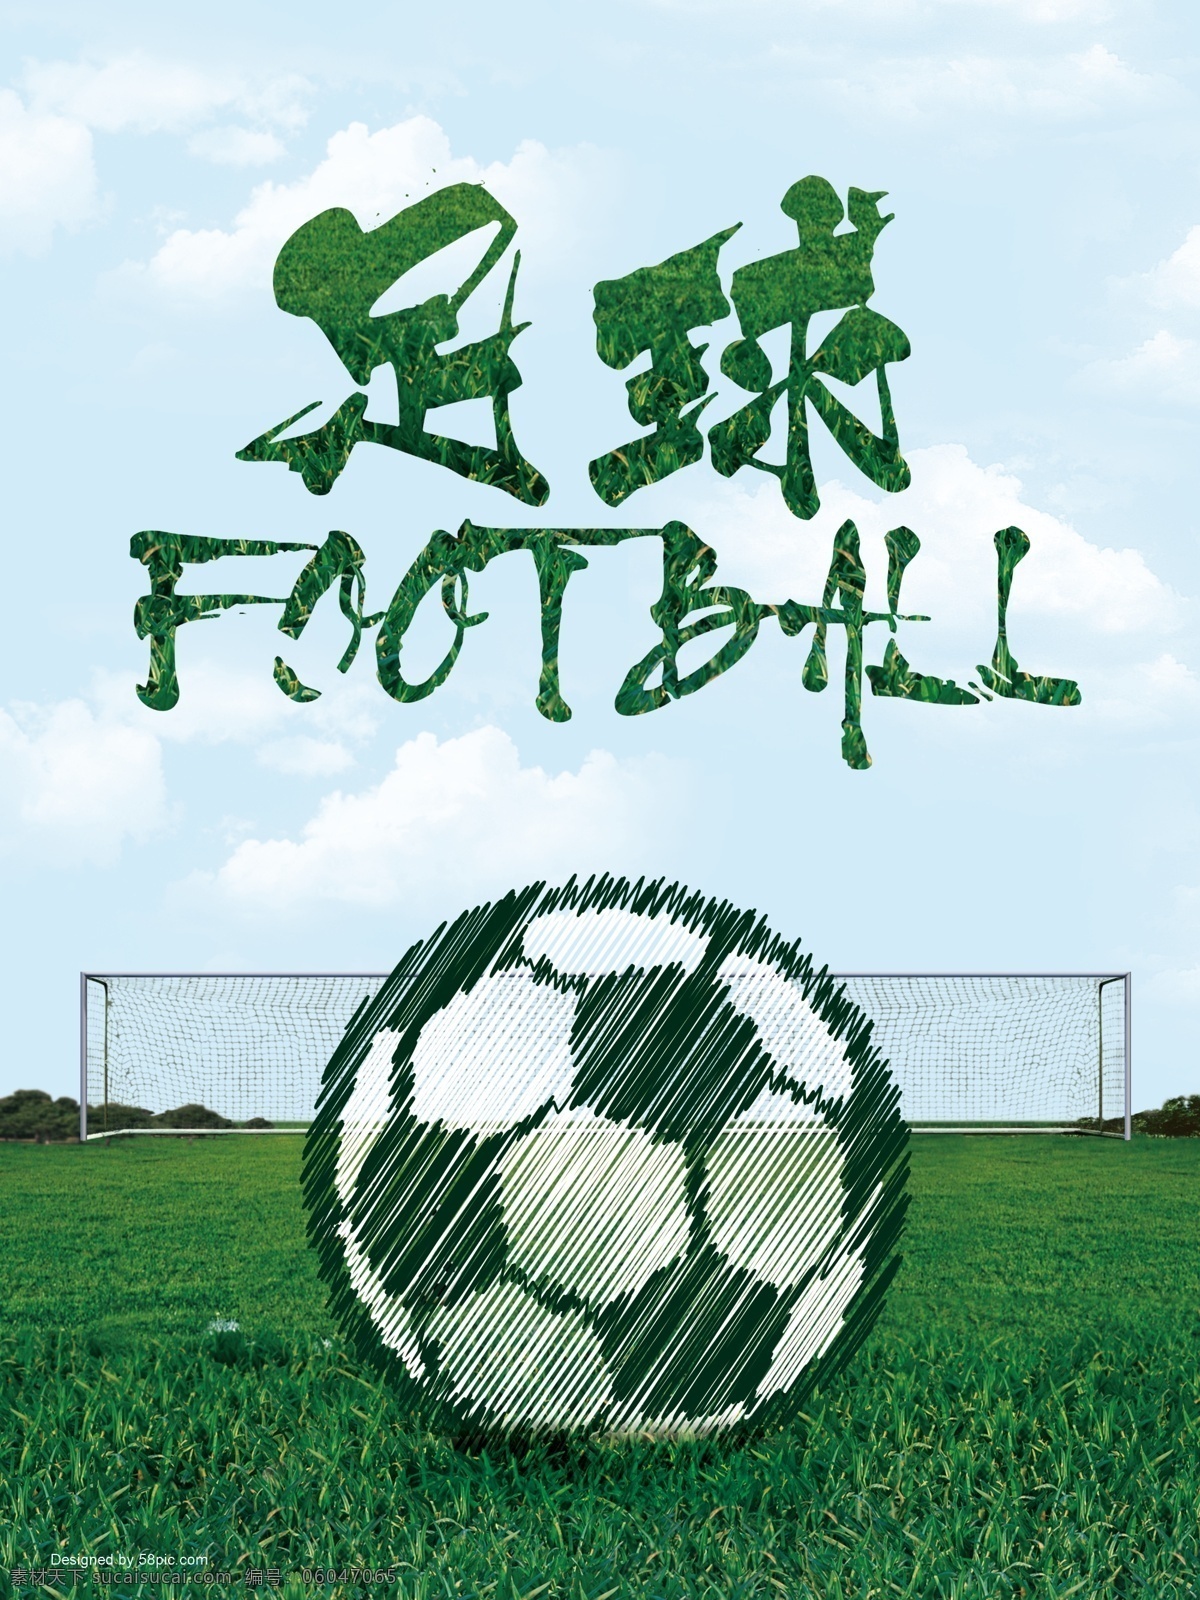 世界杯 足球比赛海报 运动足球海报 创意欧冠联赛 平面设计 谁与争锋 年轻不服输 足球广告 展板模板